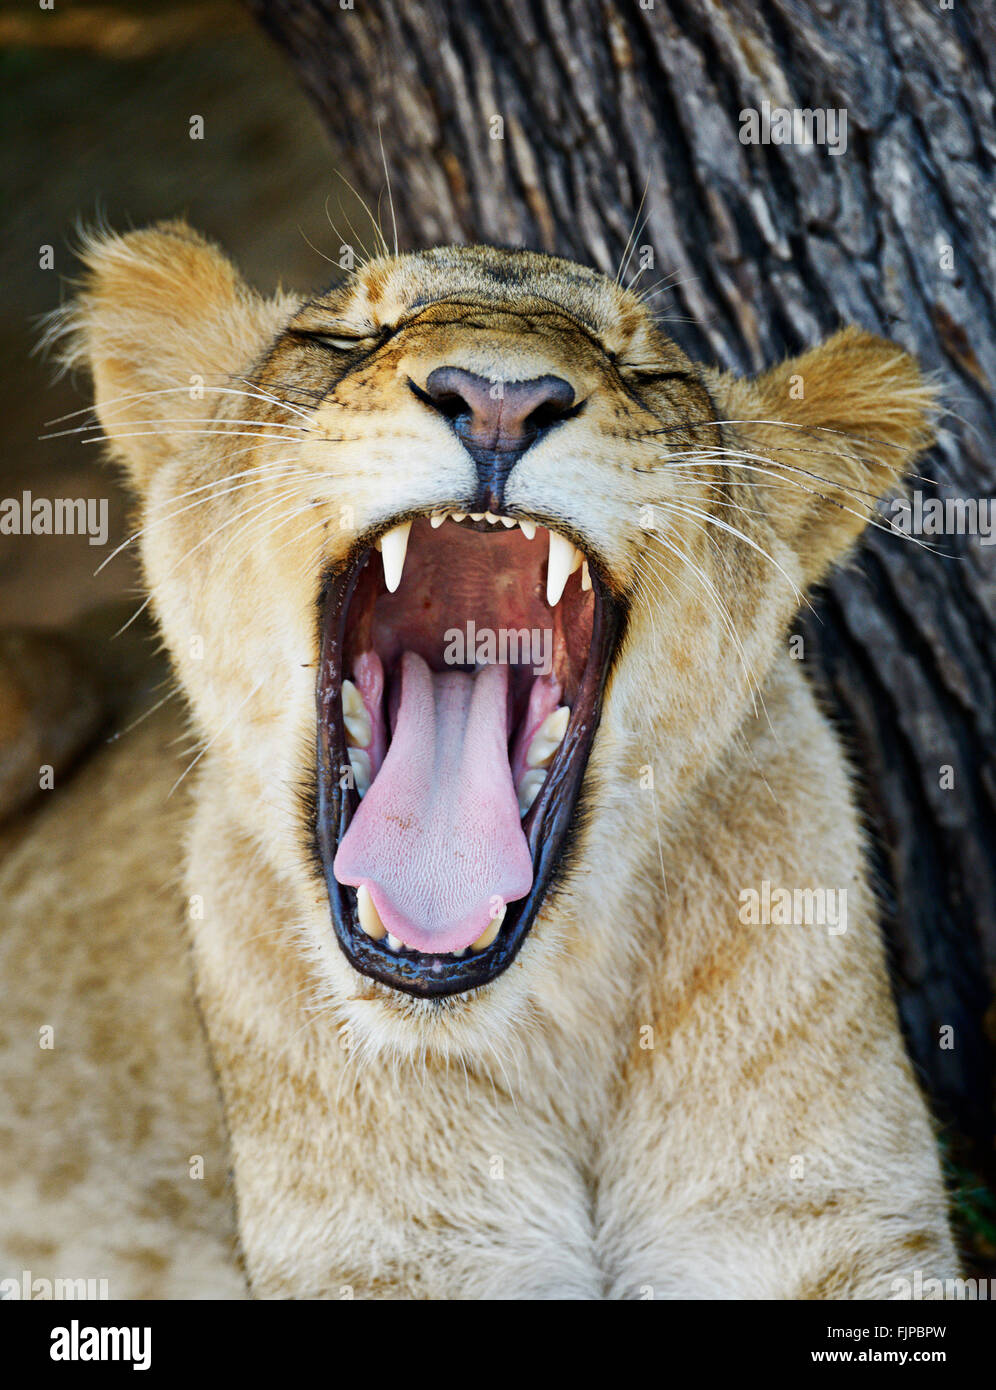 Lion incontra organizza passeggiate con i lions vicino a Victoria Falls, Zambia. Foto Stock